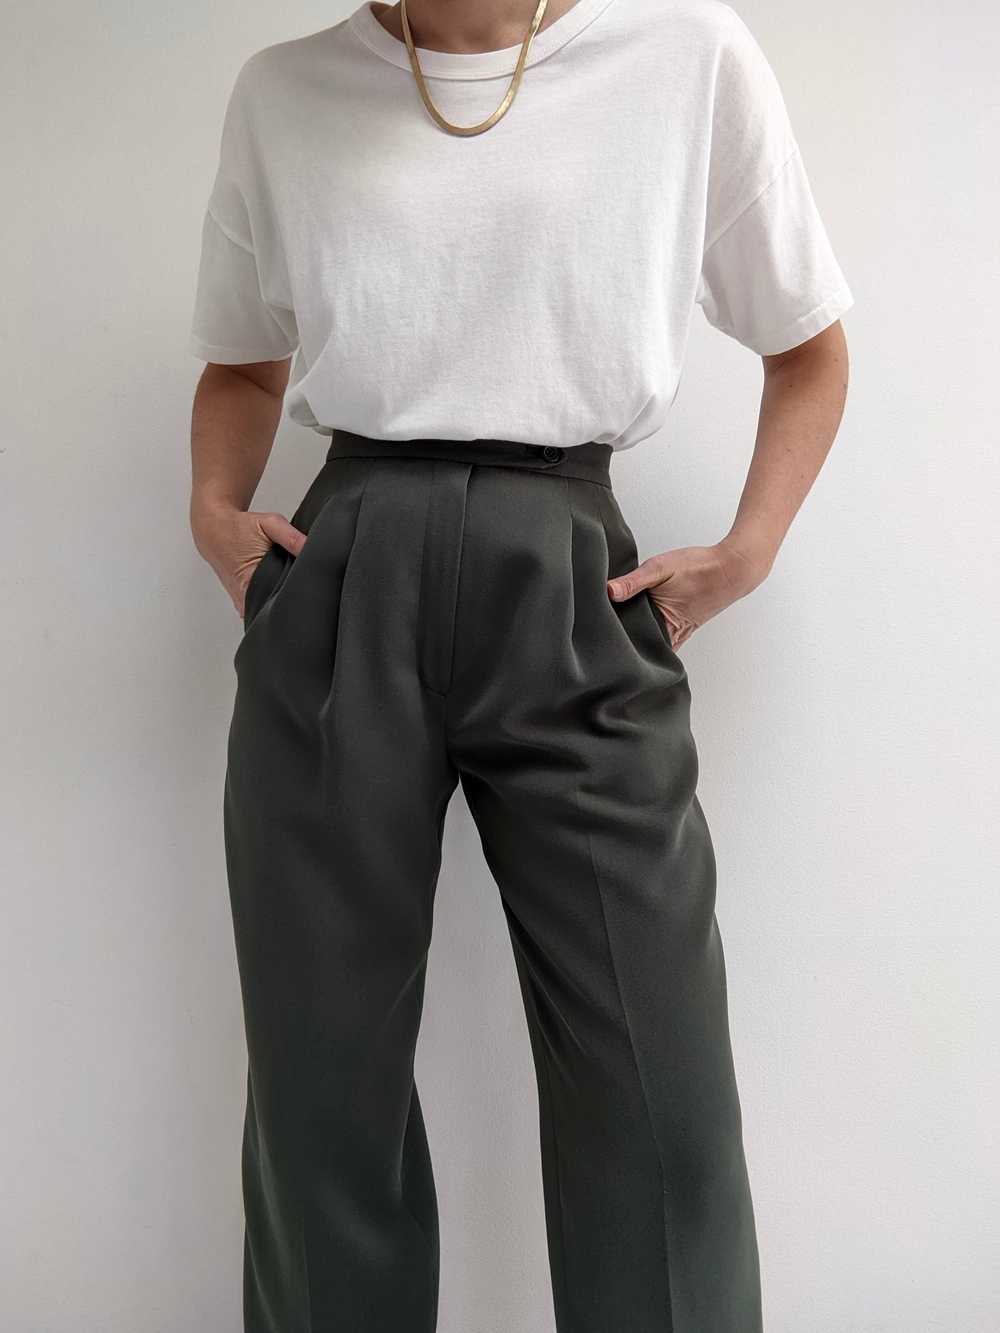 Vintage Dark Olive Pleated Trousers - image 2